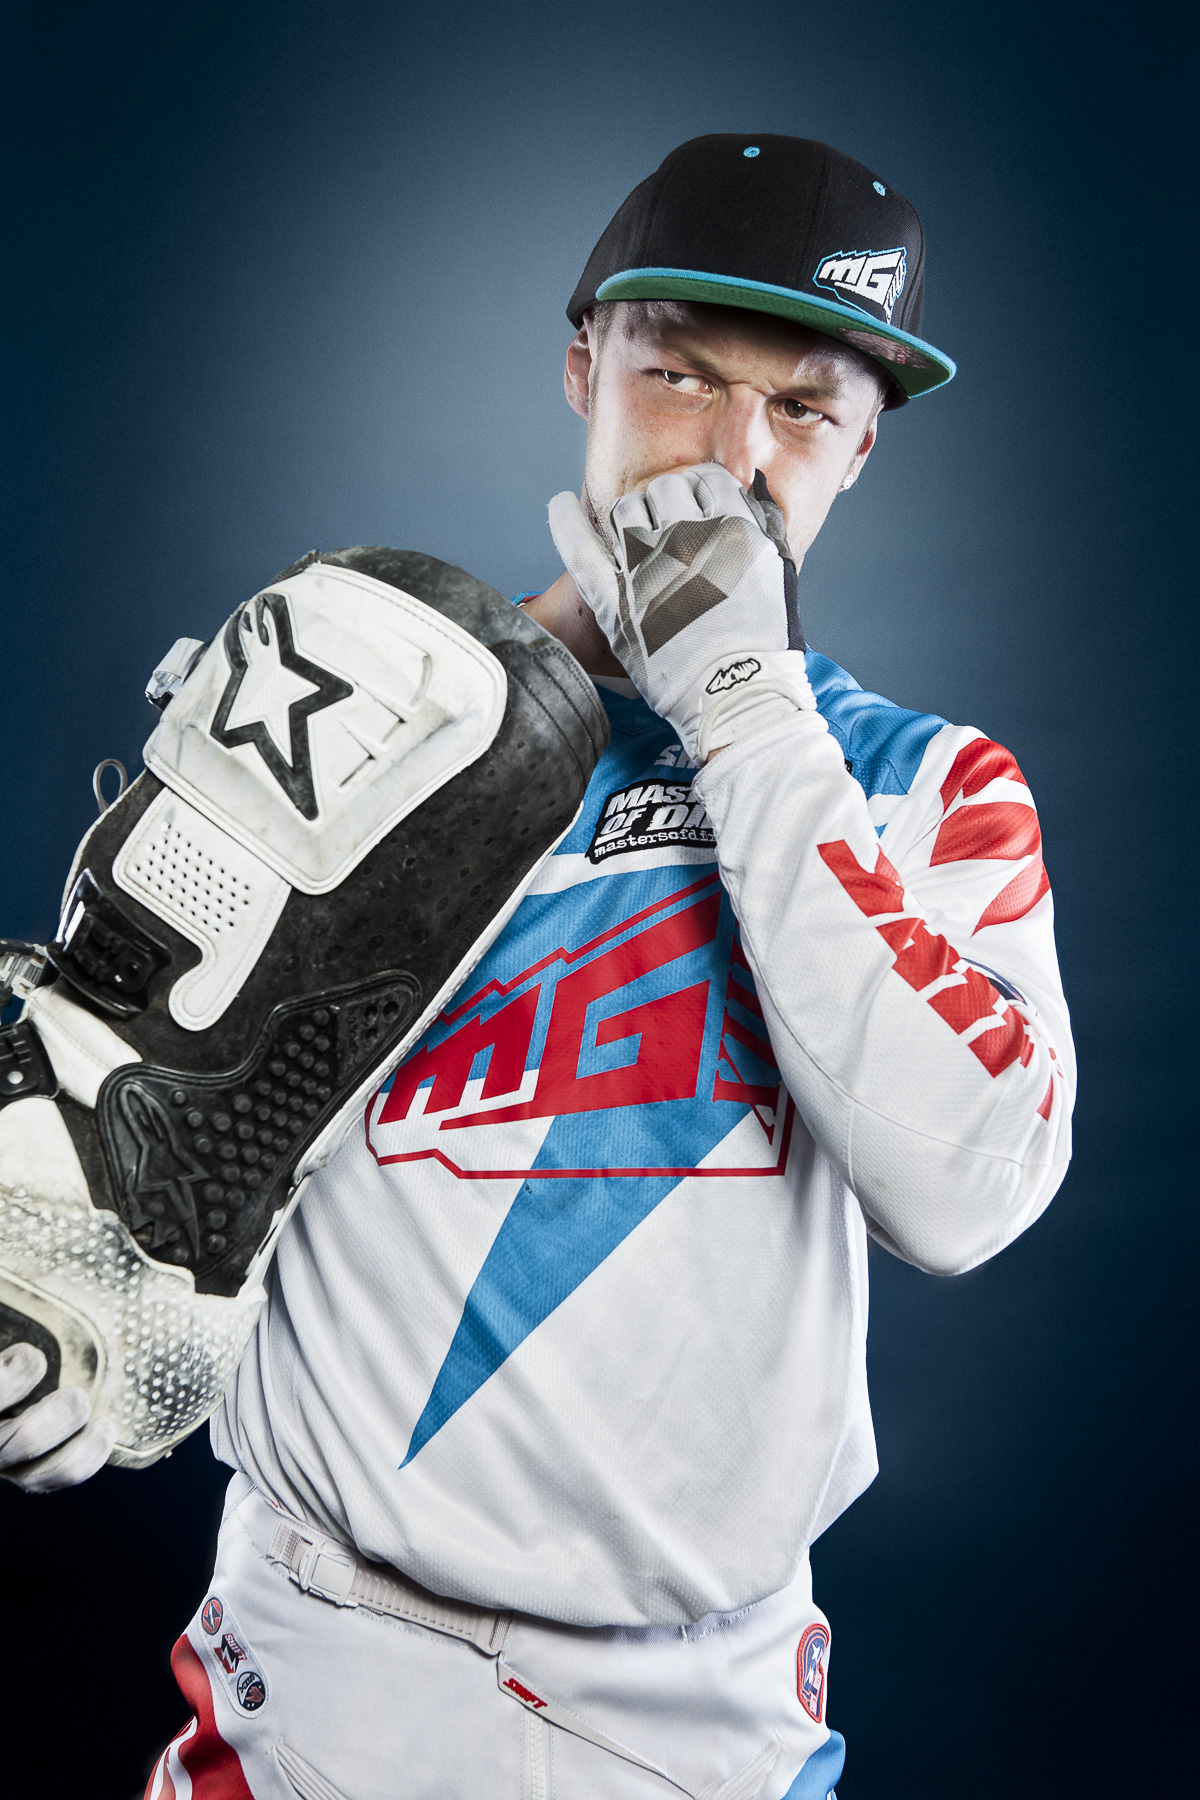 Sportrait – Real Sportsman – Freestyle Motocross